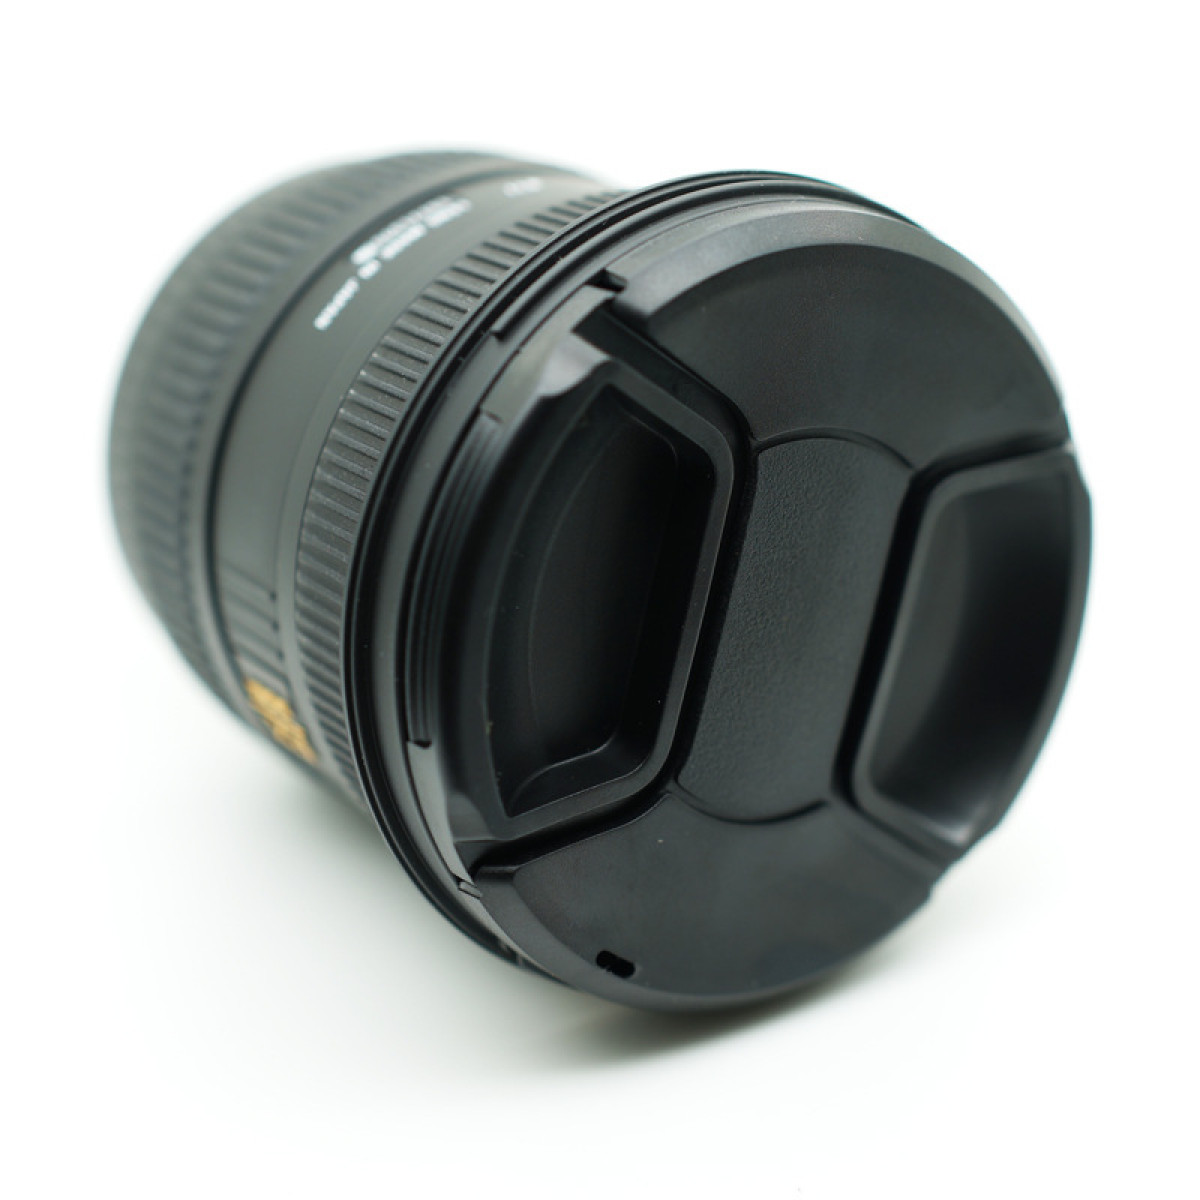 Sony für Pe INF Nikon Objektivdeckelabdeckung Objektivdeckel, Universelle Canon Schwarz Riemen mit